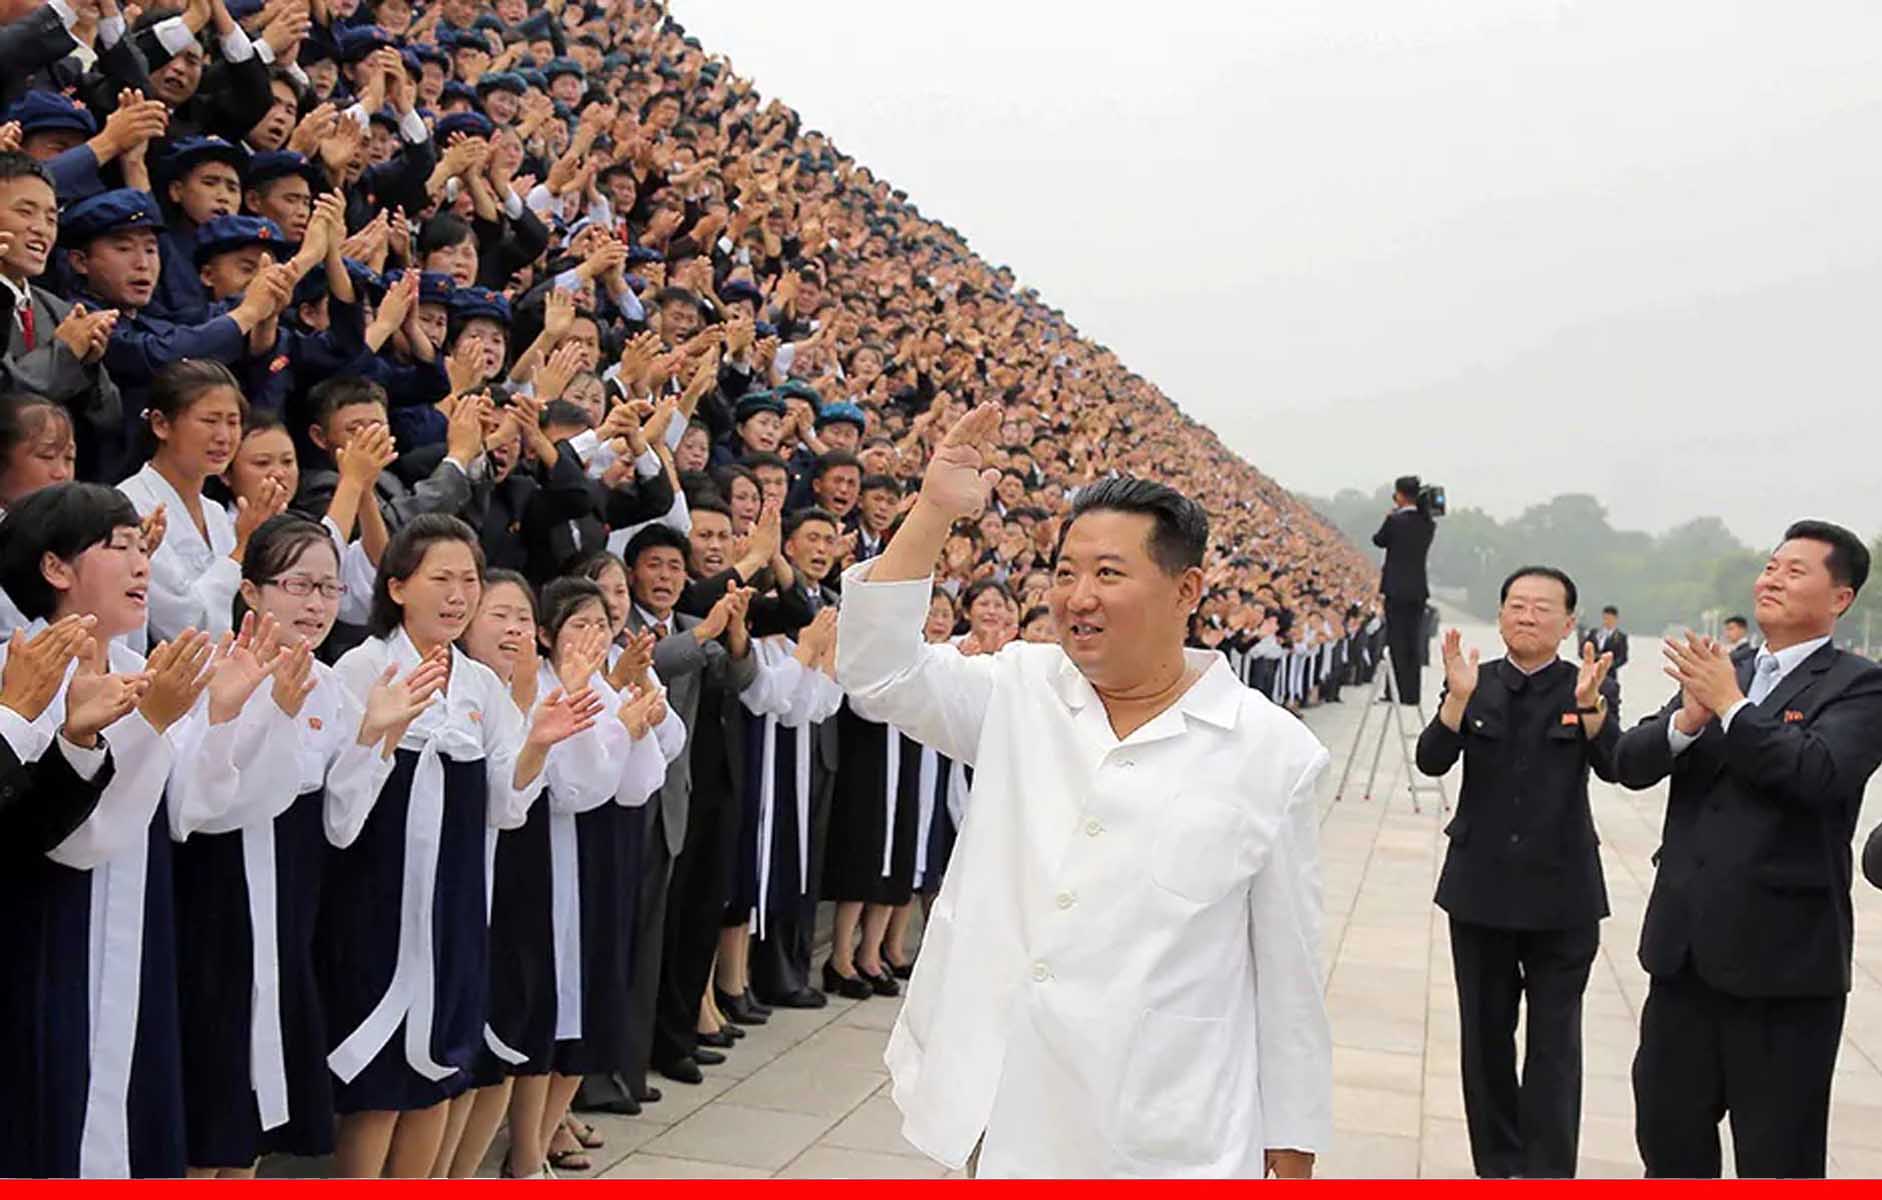 उत्तरी कोरिया के तानाशाह किम जोंग का बदल गया लुक, पहले से ज्यादा हुए पतले